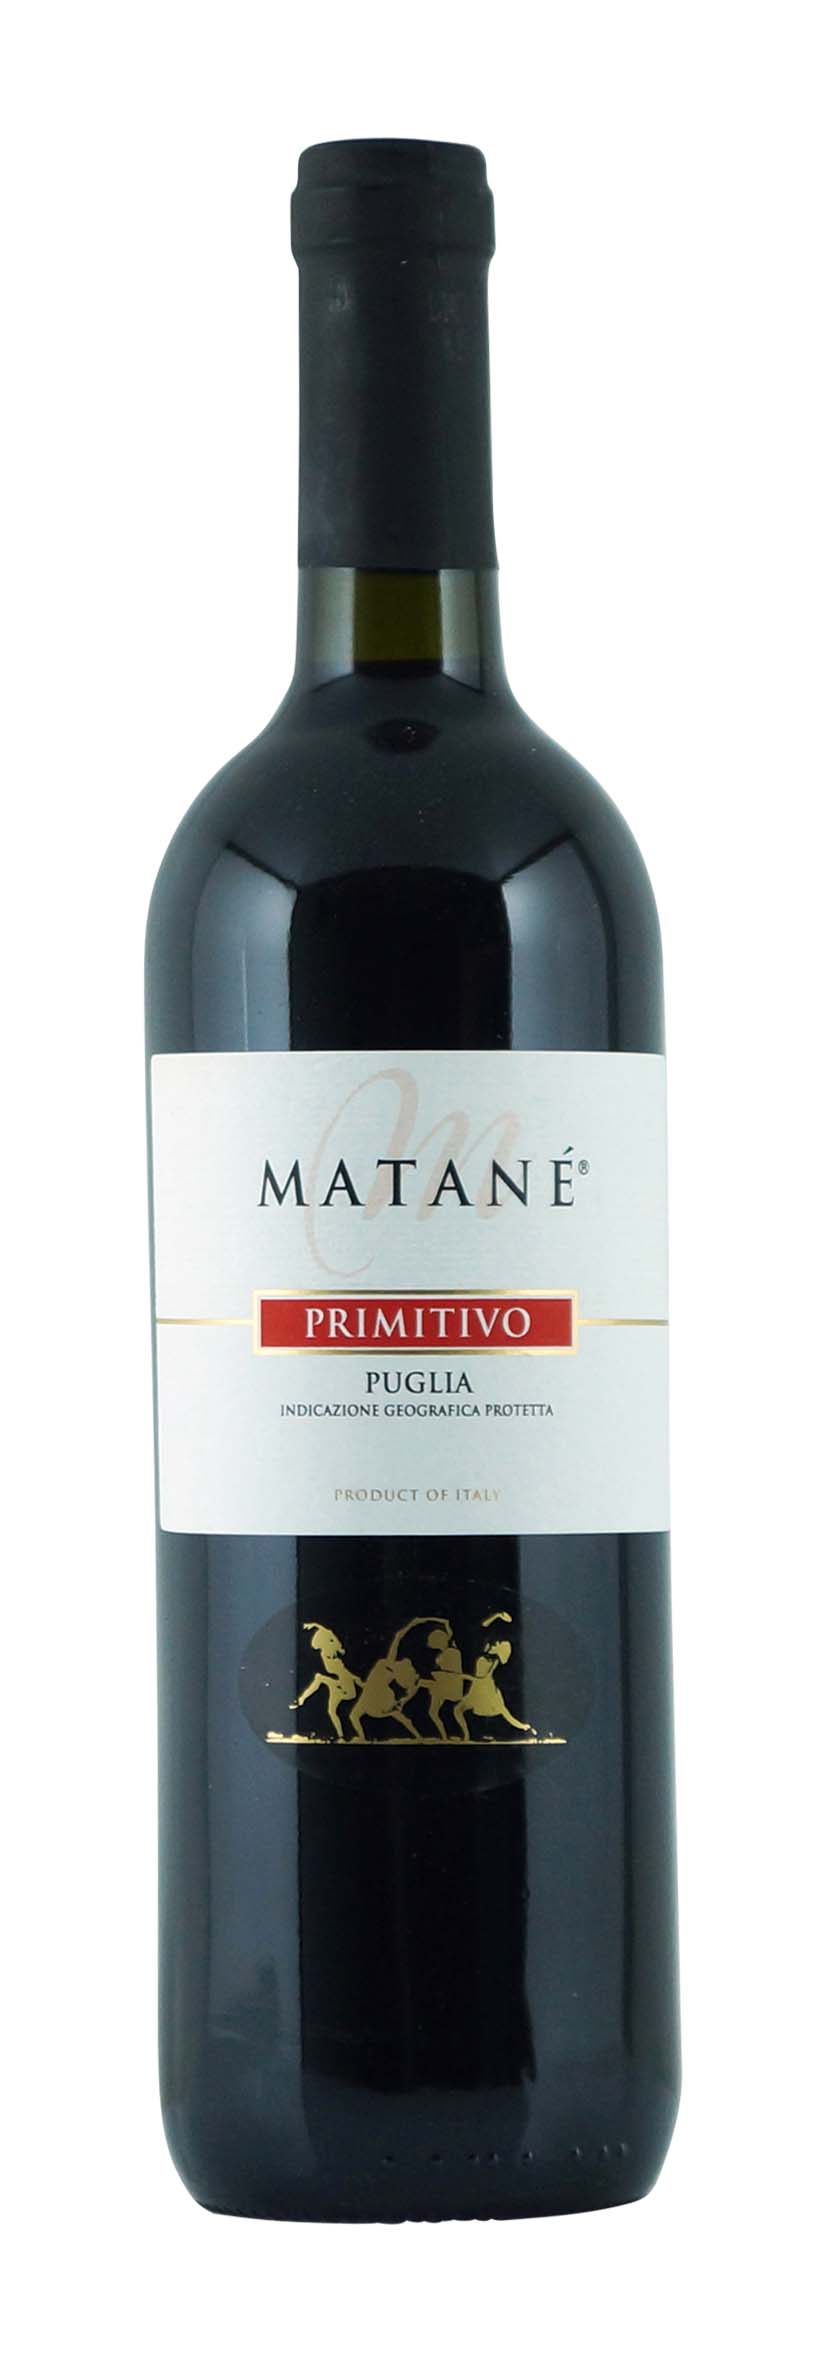 Puglia IGT Primitivo Matané 2013